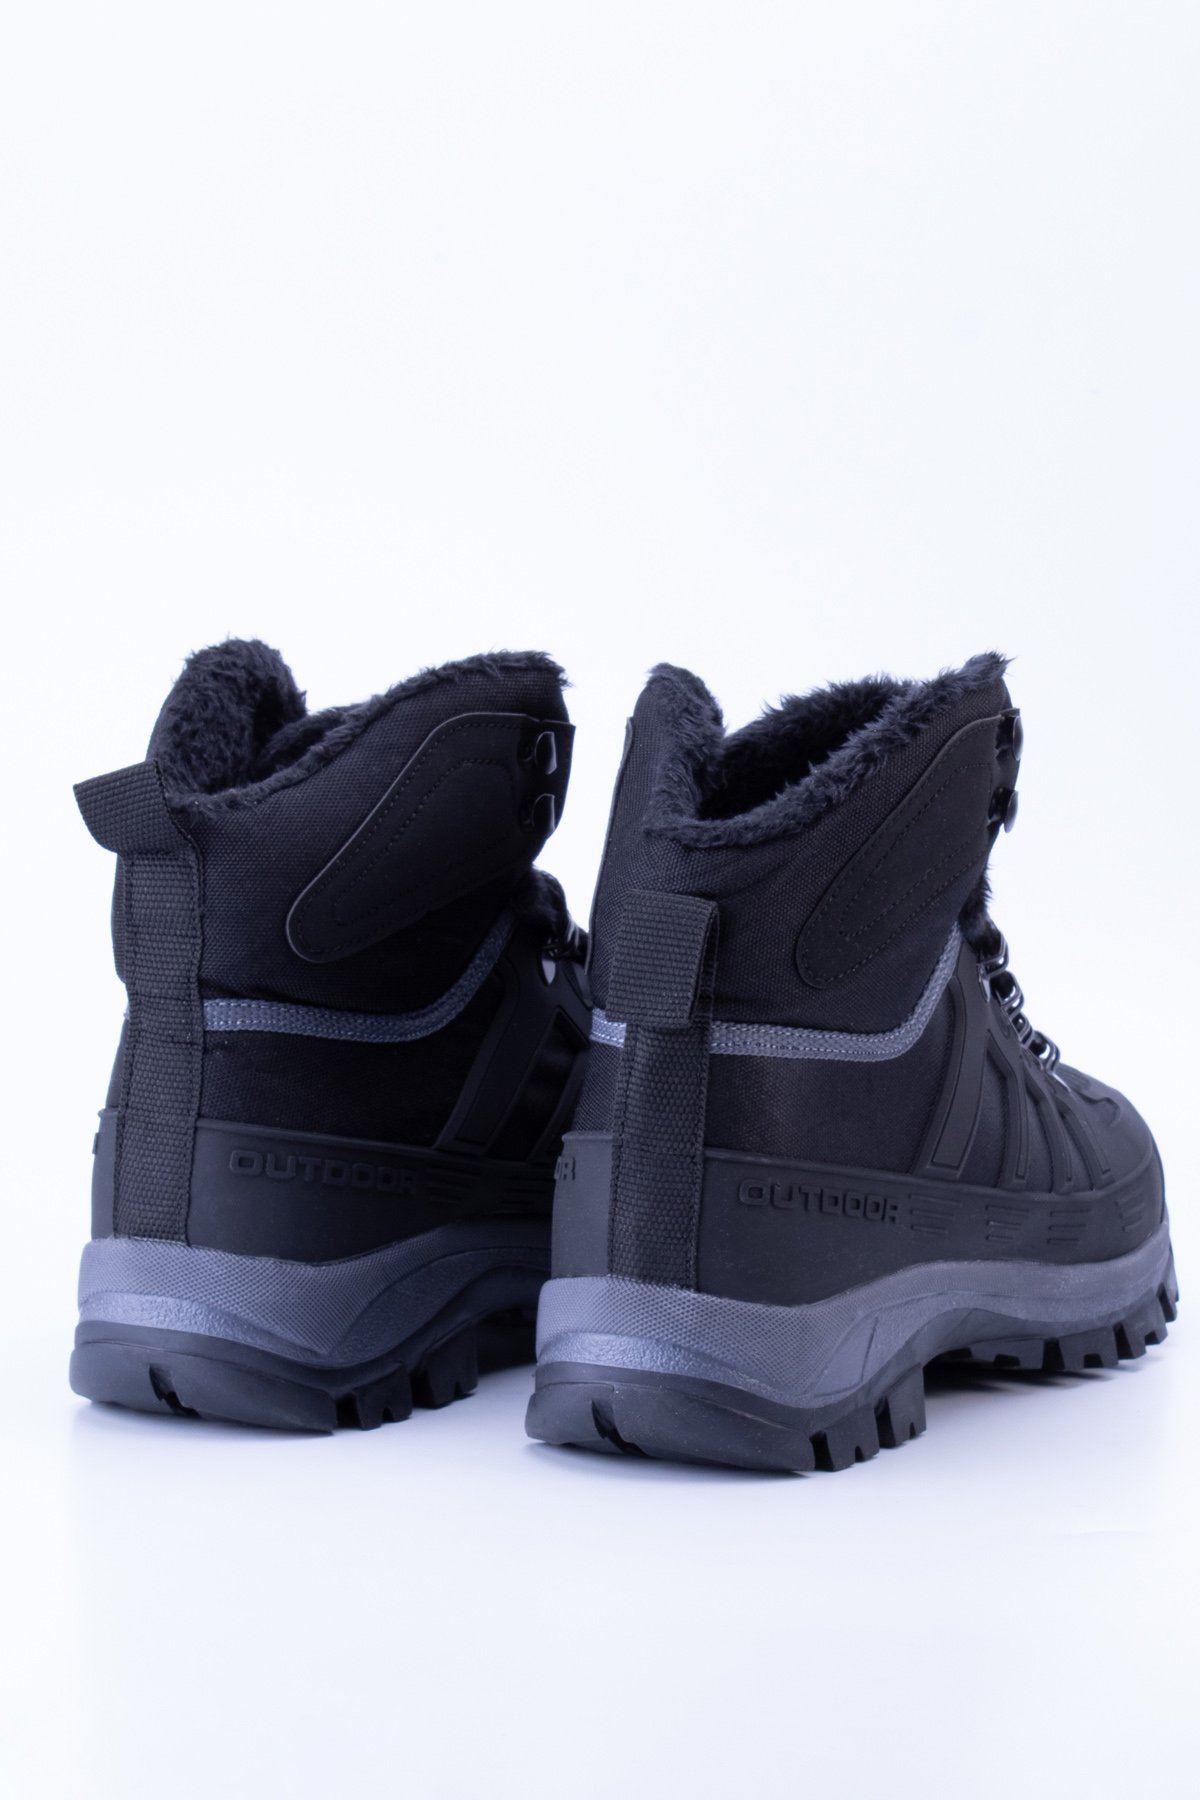 Unisex Thermo Taban İçi Kürklü Outdoor Ayakkabı T40 - Siyah